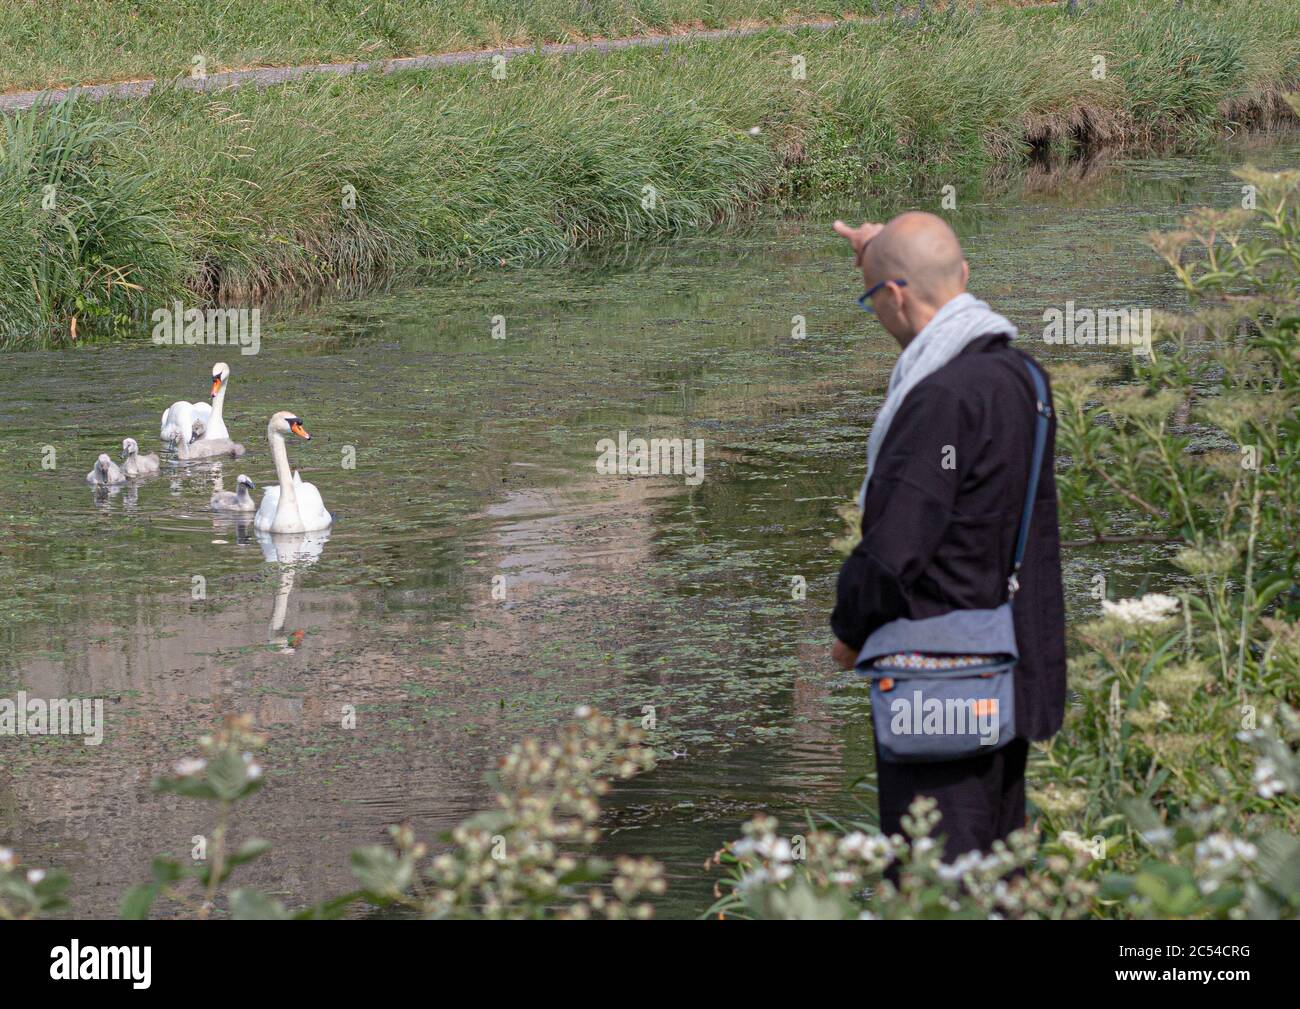 NANCY, FRANCE - Jun 04, 2020: Au bord de la rivière un homme envoie de la nourriture à un couple de cygnes et leurs petits Stock Photo